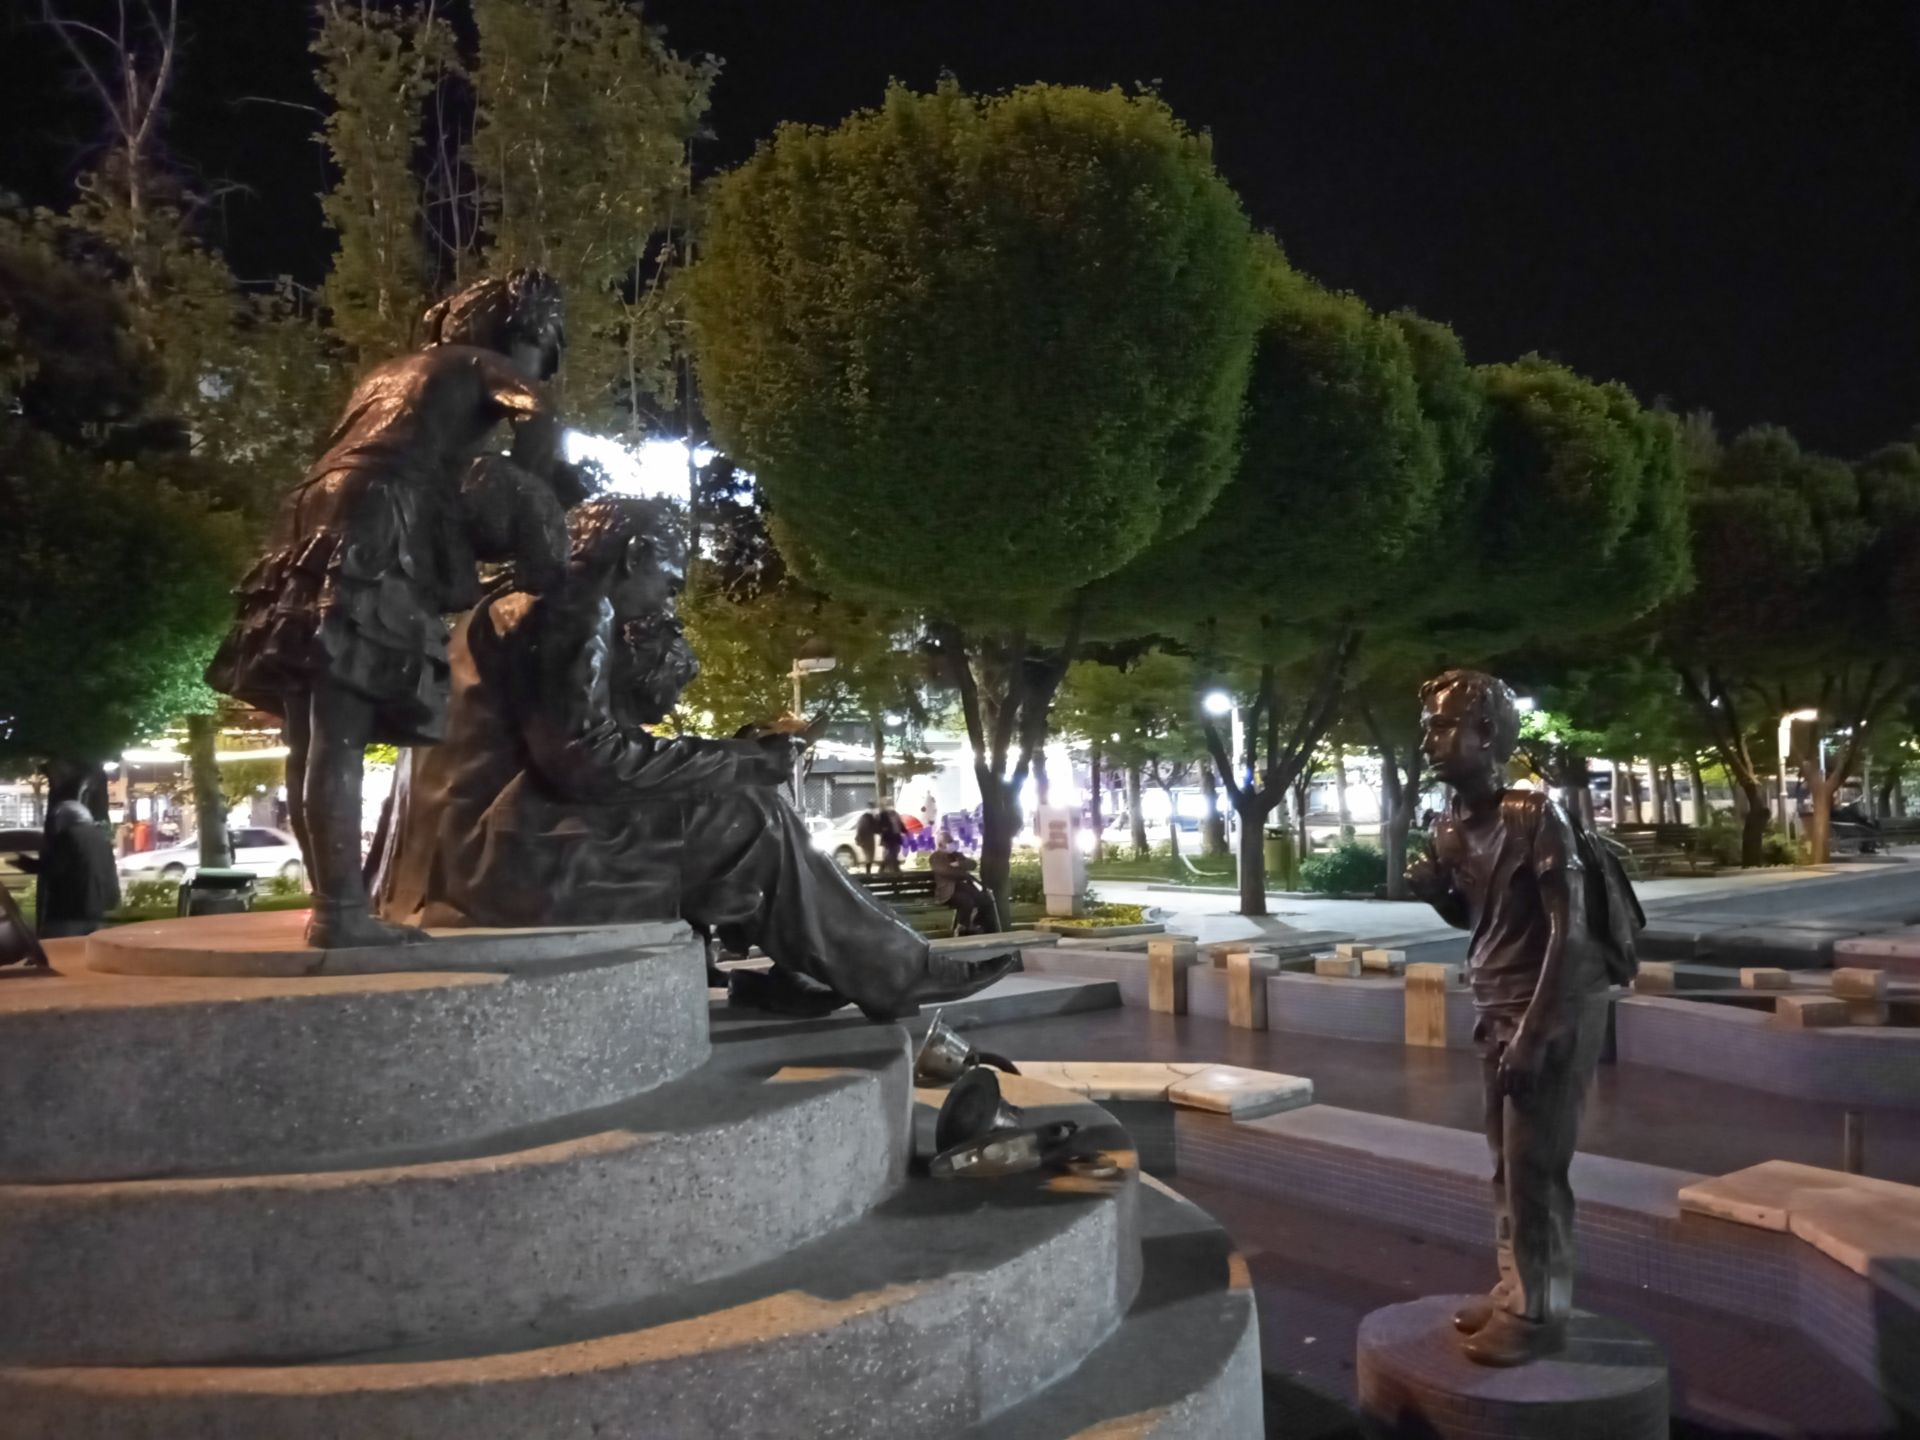 نمونه عکس دوربین اصلی ال جی K51S در شب - مجسمه در پارک